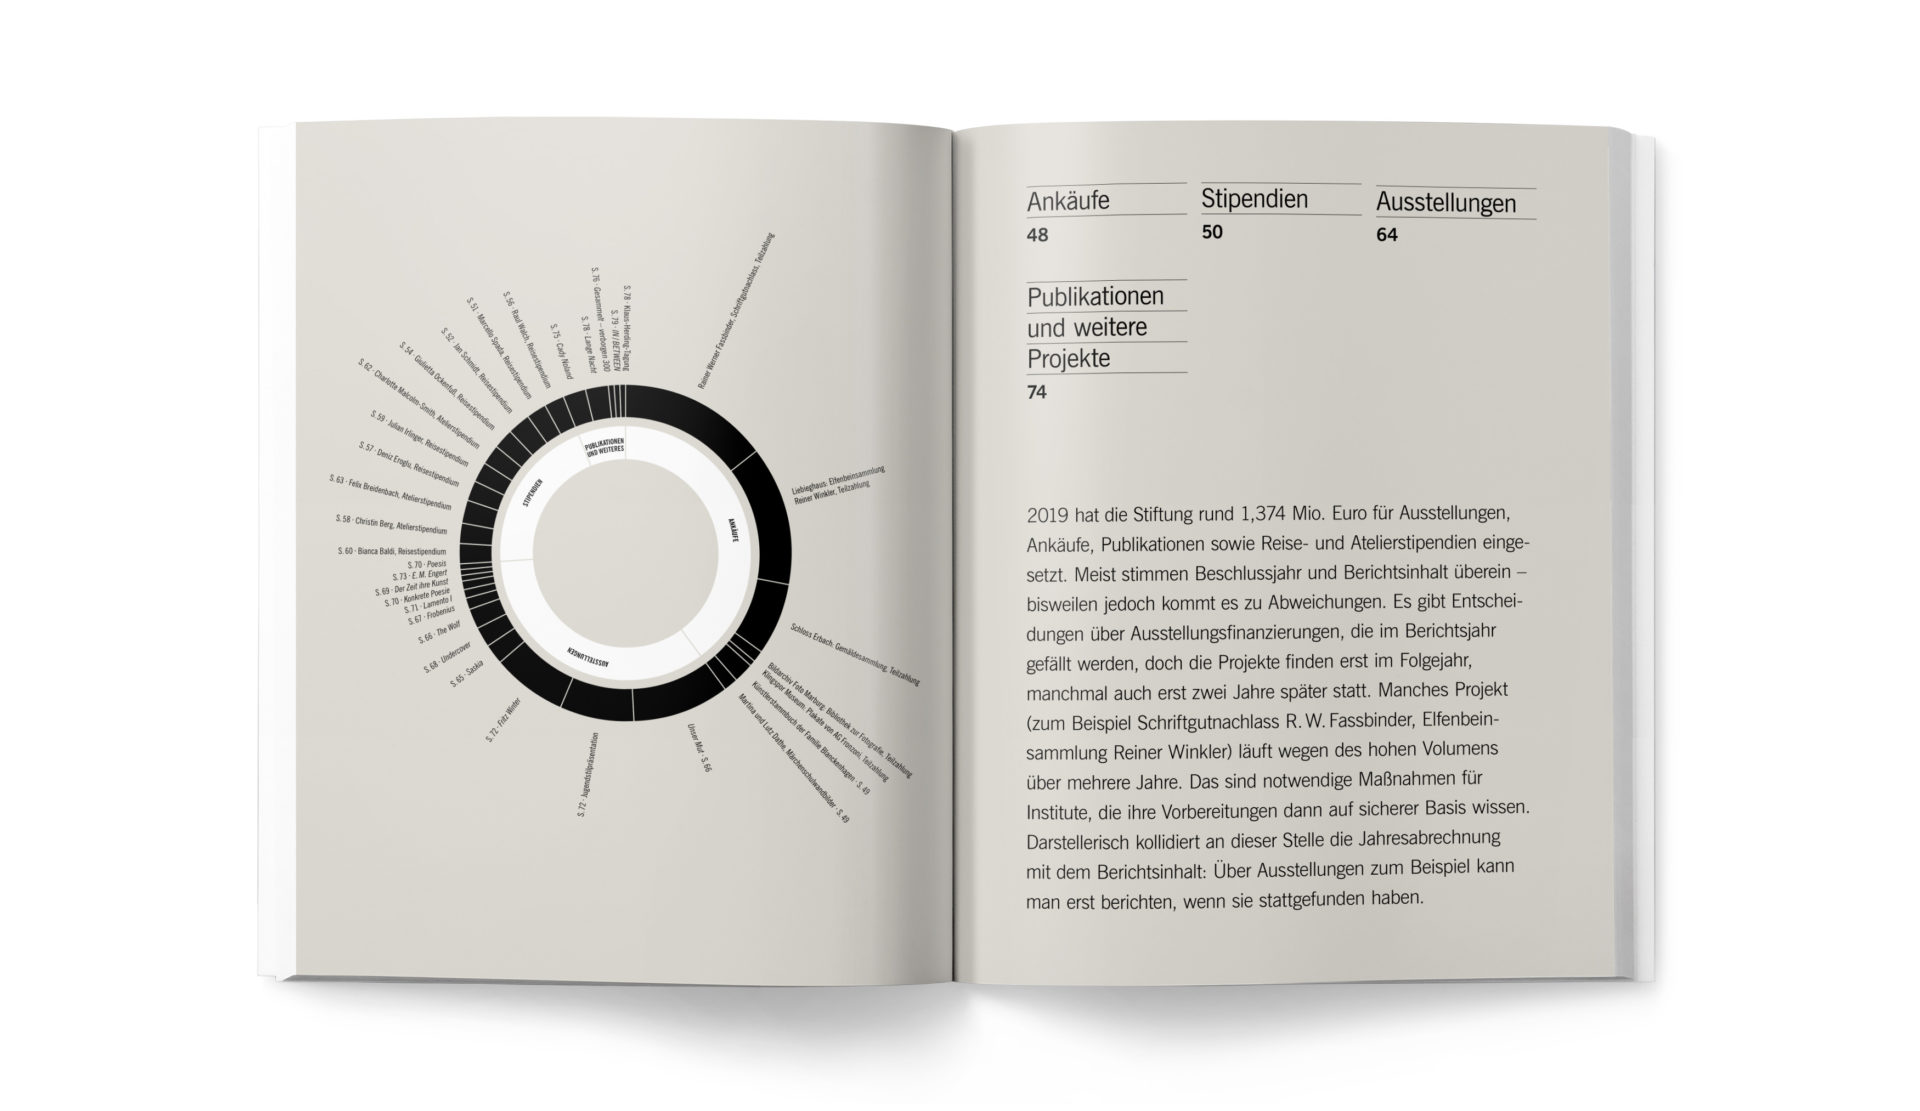 Geschäftsbericht Hessische Kulturstiftung 2019 - Doppelseite mit Diagramm